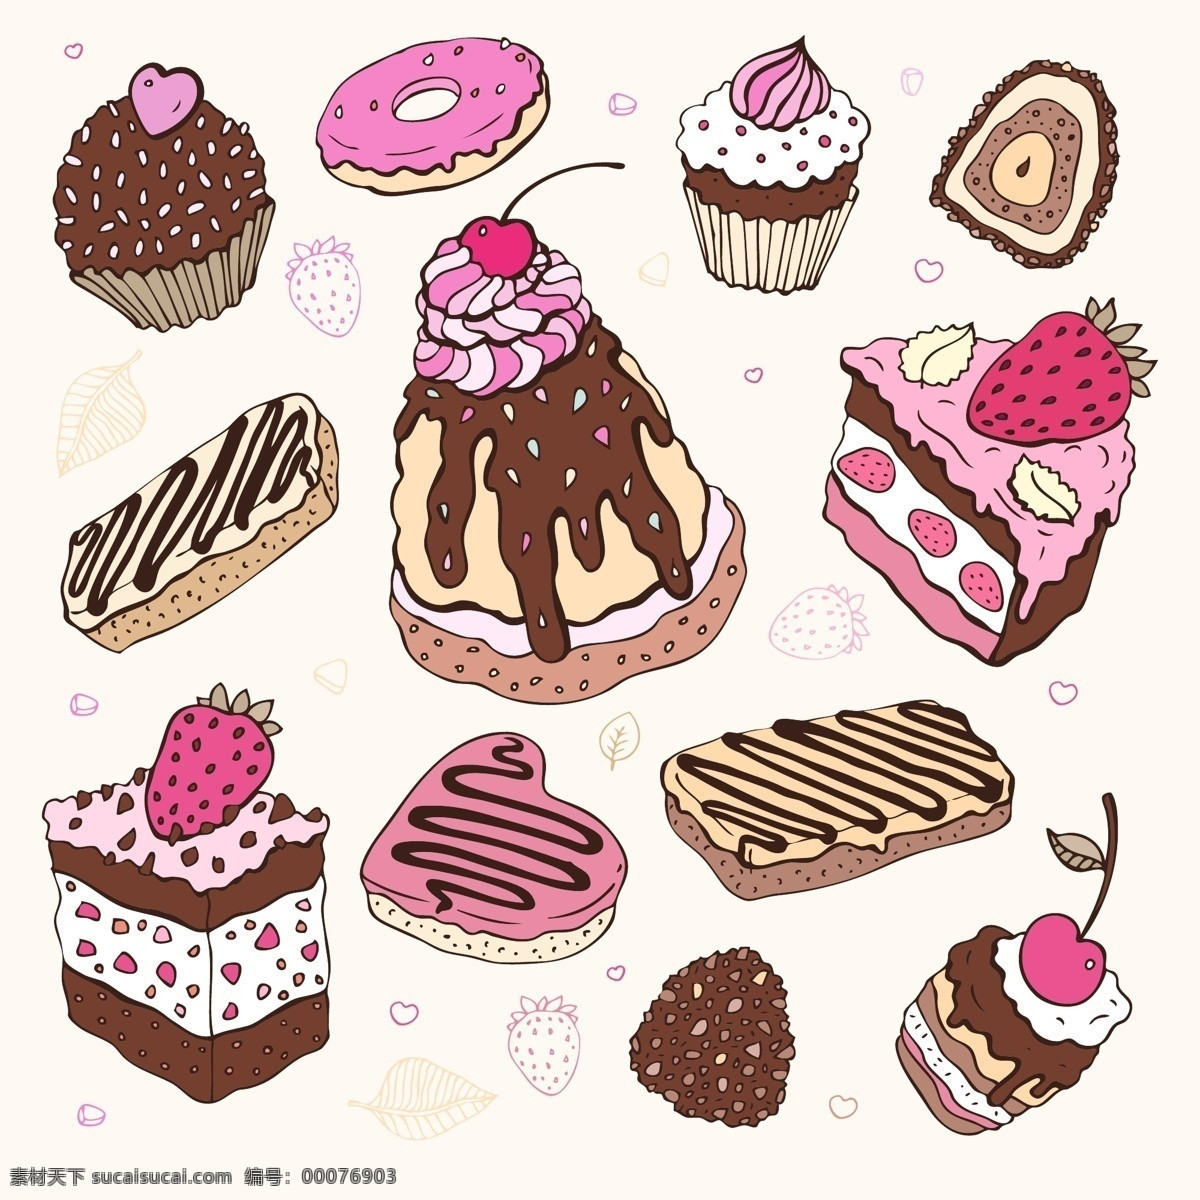 彩绘 蛋糕 甜点 曲奇 矢量图 甜品 甜甜圈 其他矢量图